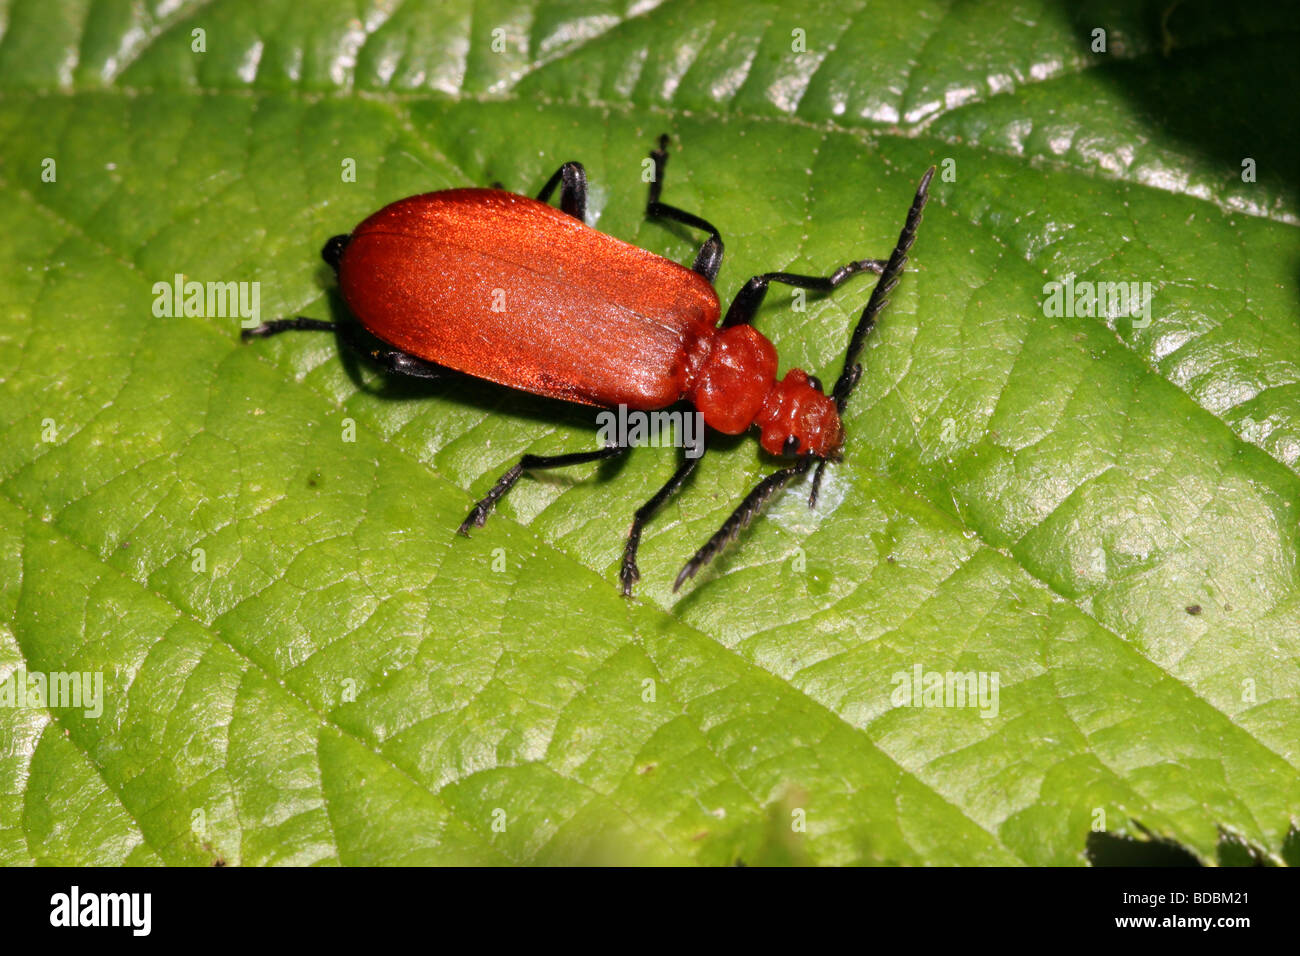 Rote Leitung Kardinal Beetle Pyrochroa Serraticornis Pyrochroidae ernähren sich von Honigtau der Blattläuse auf einem Blatt UK Stockfoto